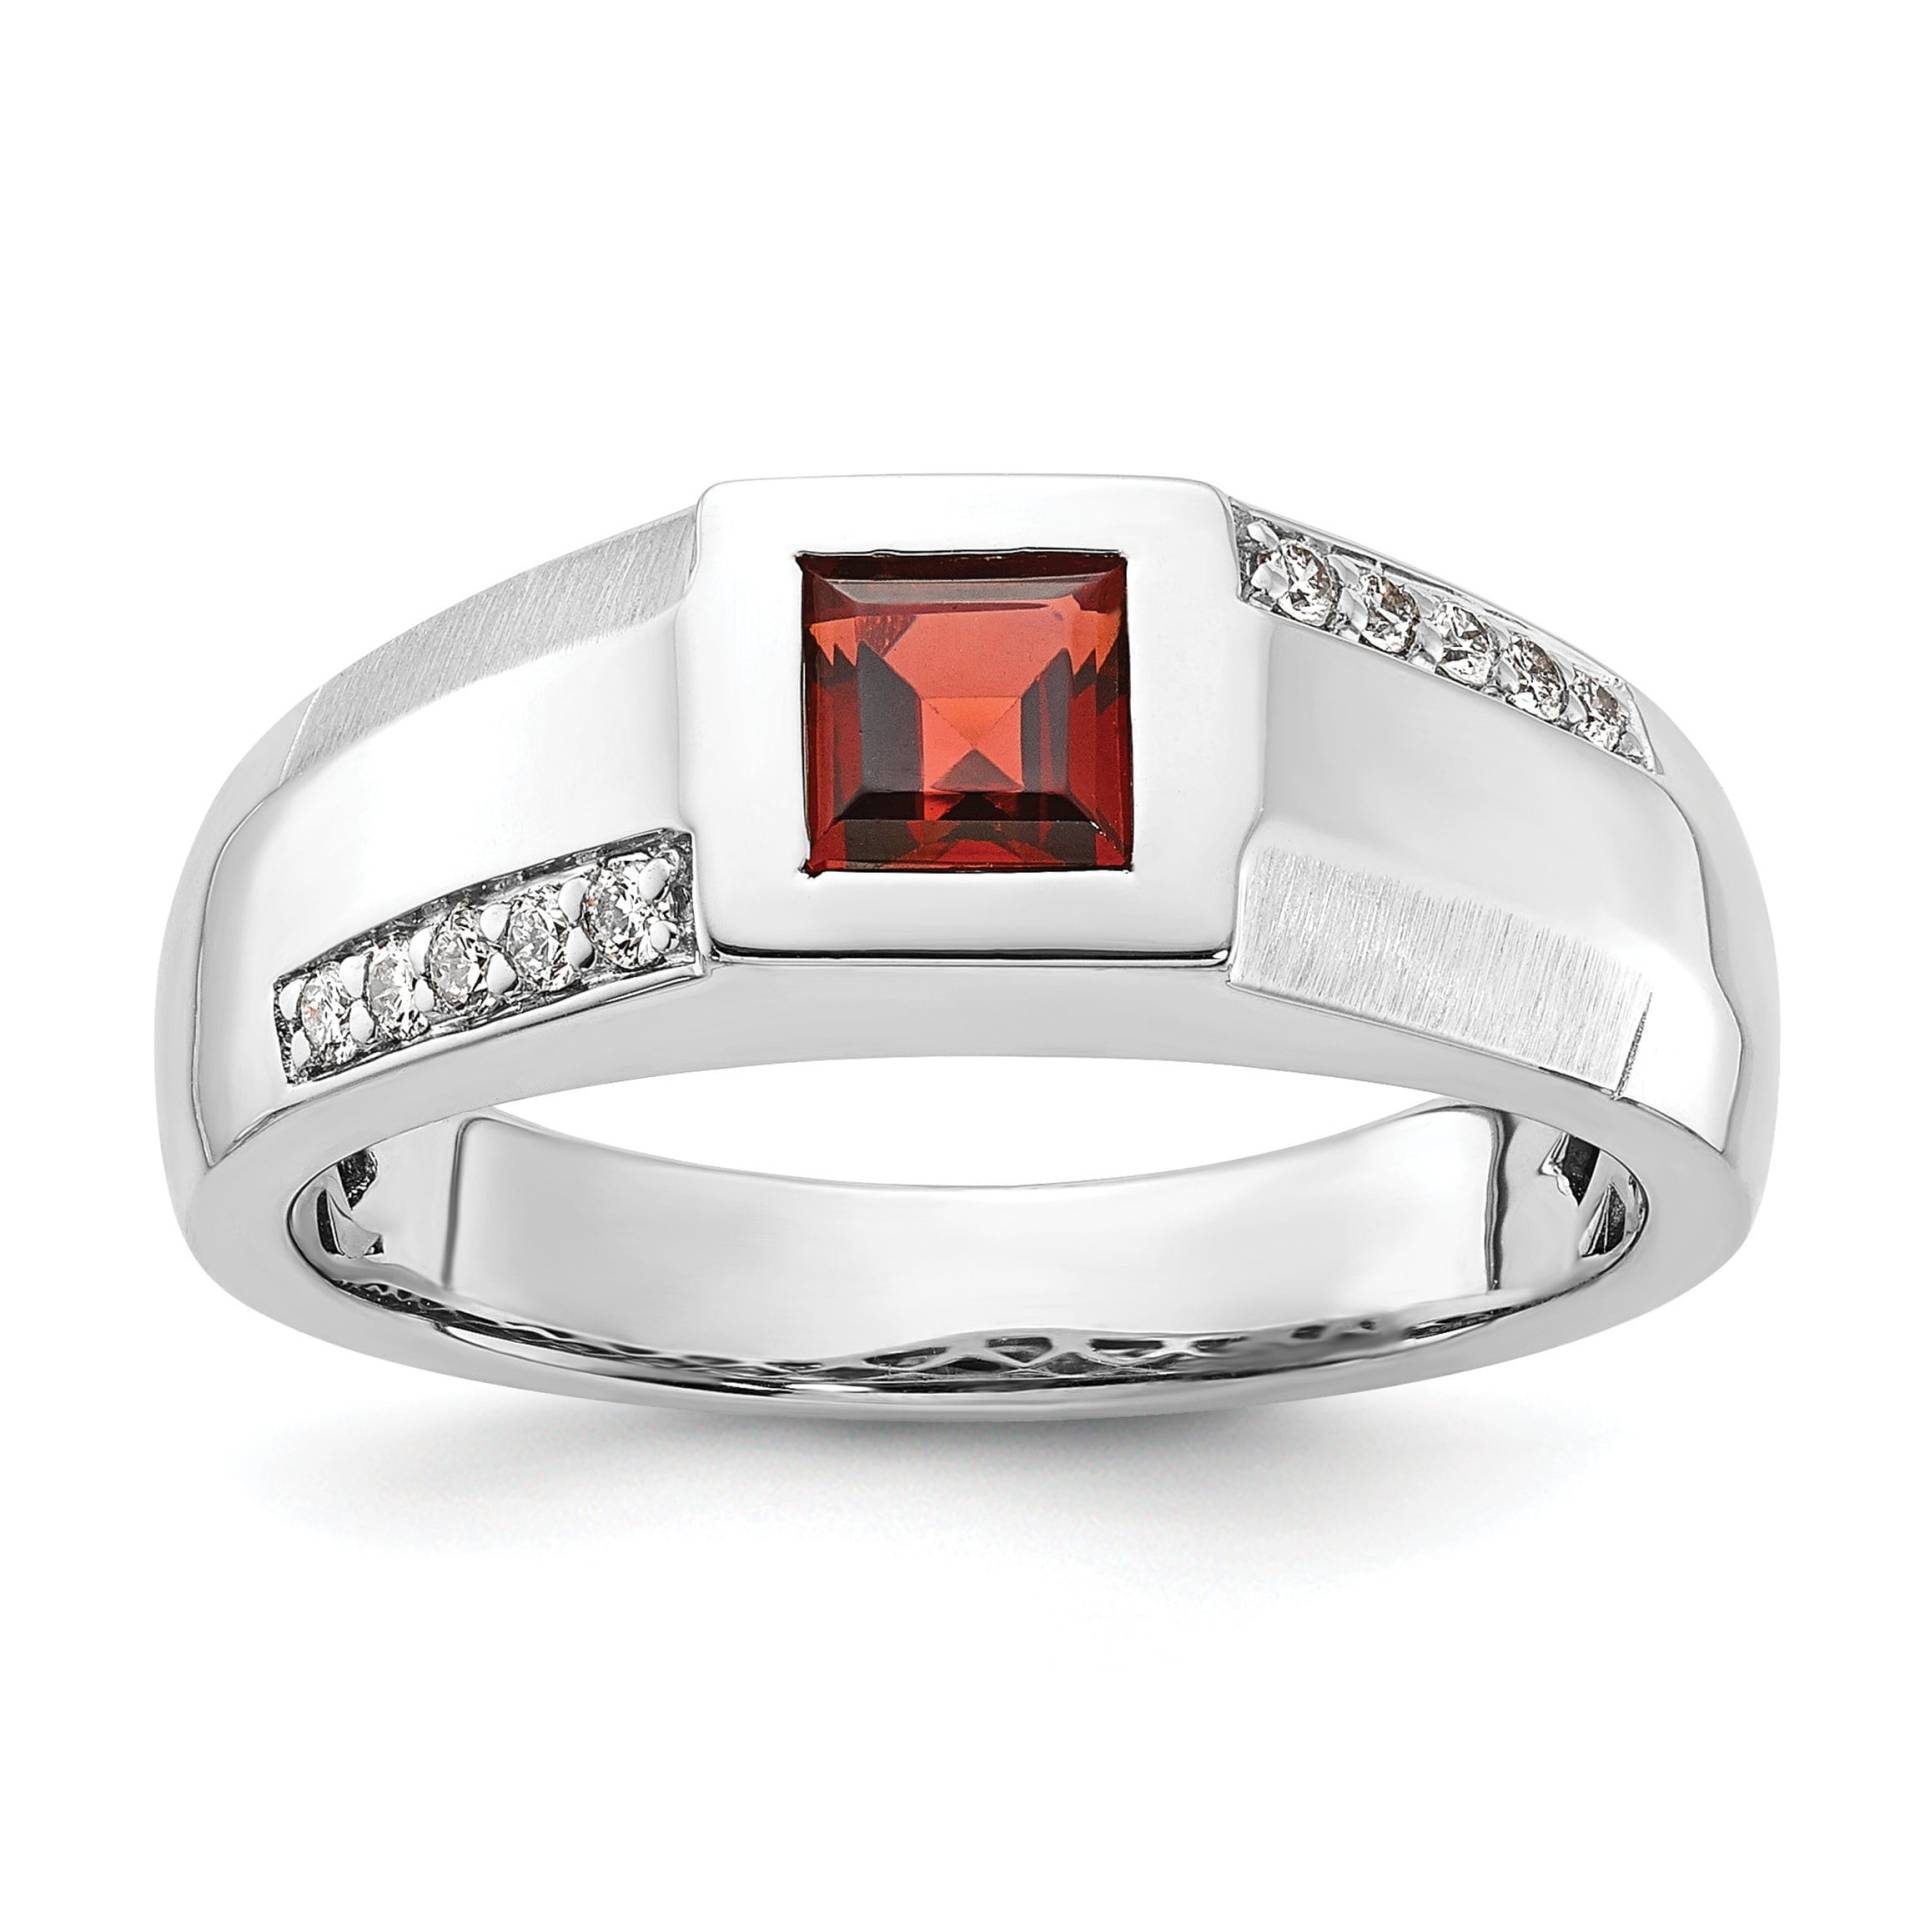 Herren Granat Ring, Roter Mit Akzent Lab Diamant Männlicher Verlobungsring, Art Deco Unikat Ehering, Silber Handarbeit Ring von WeddingJewellry